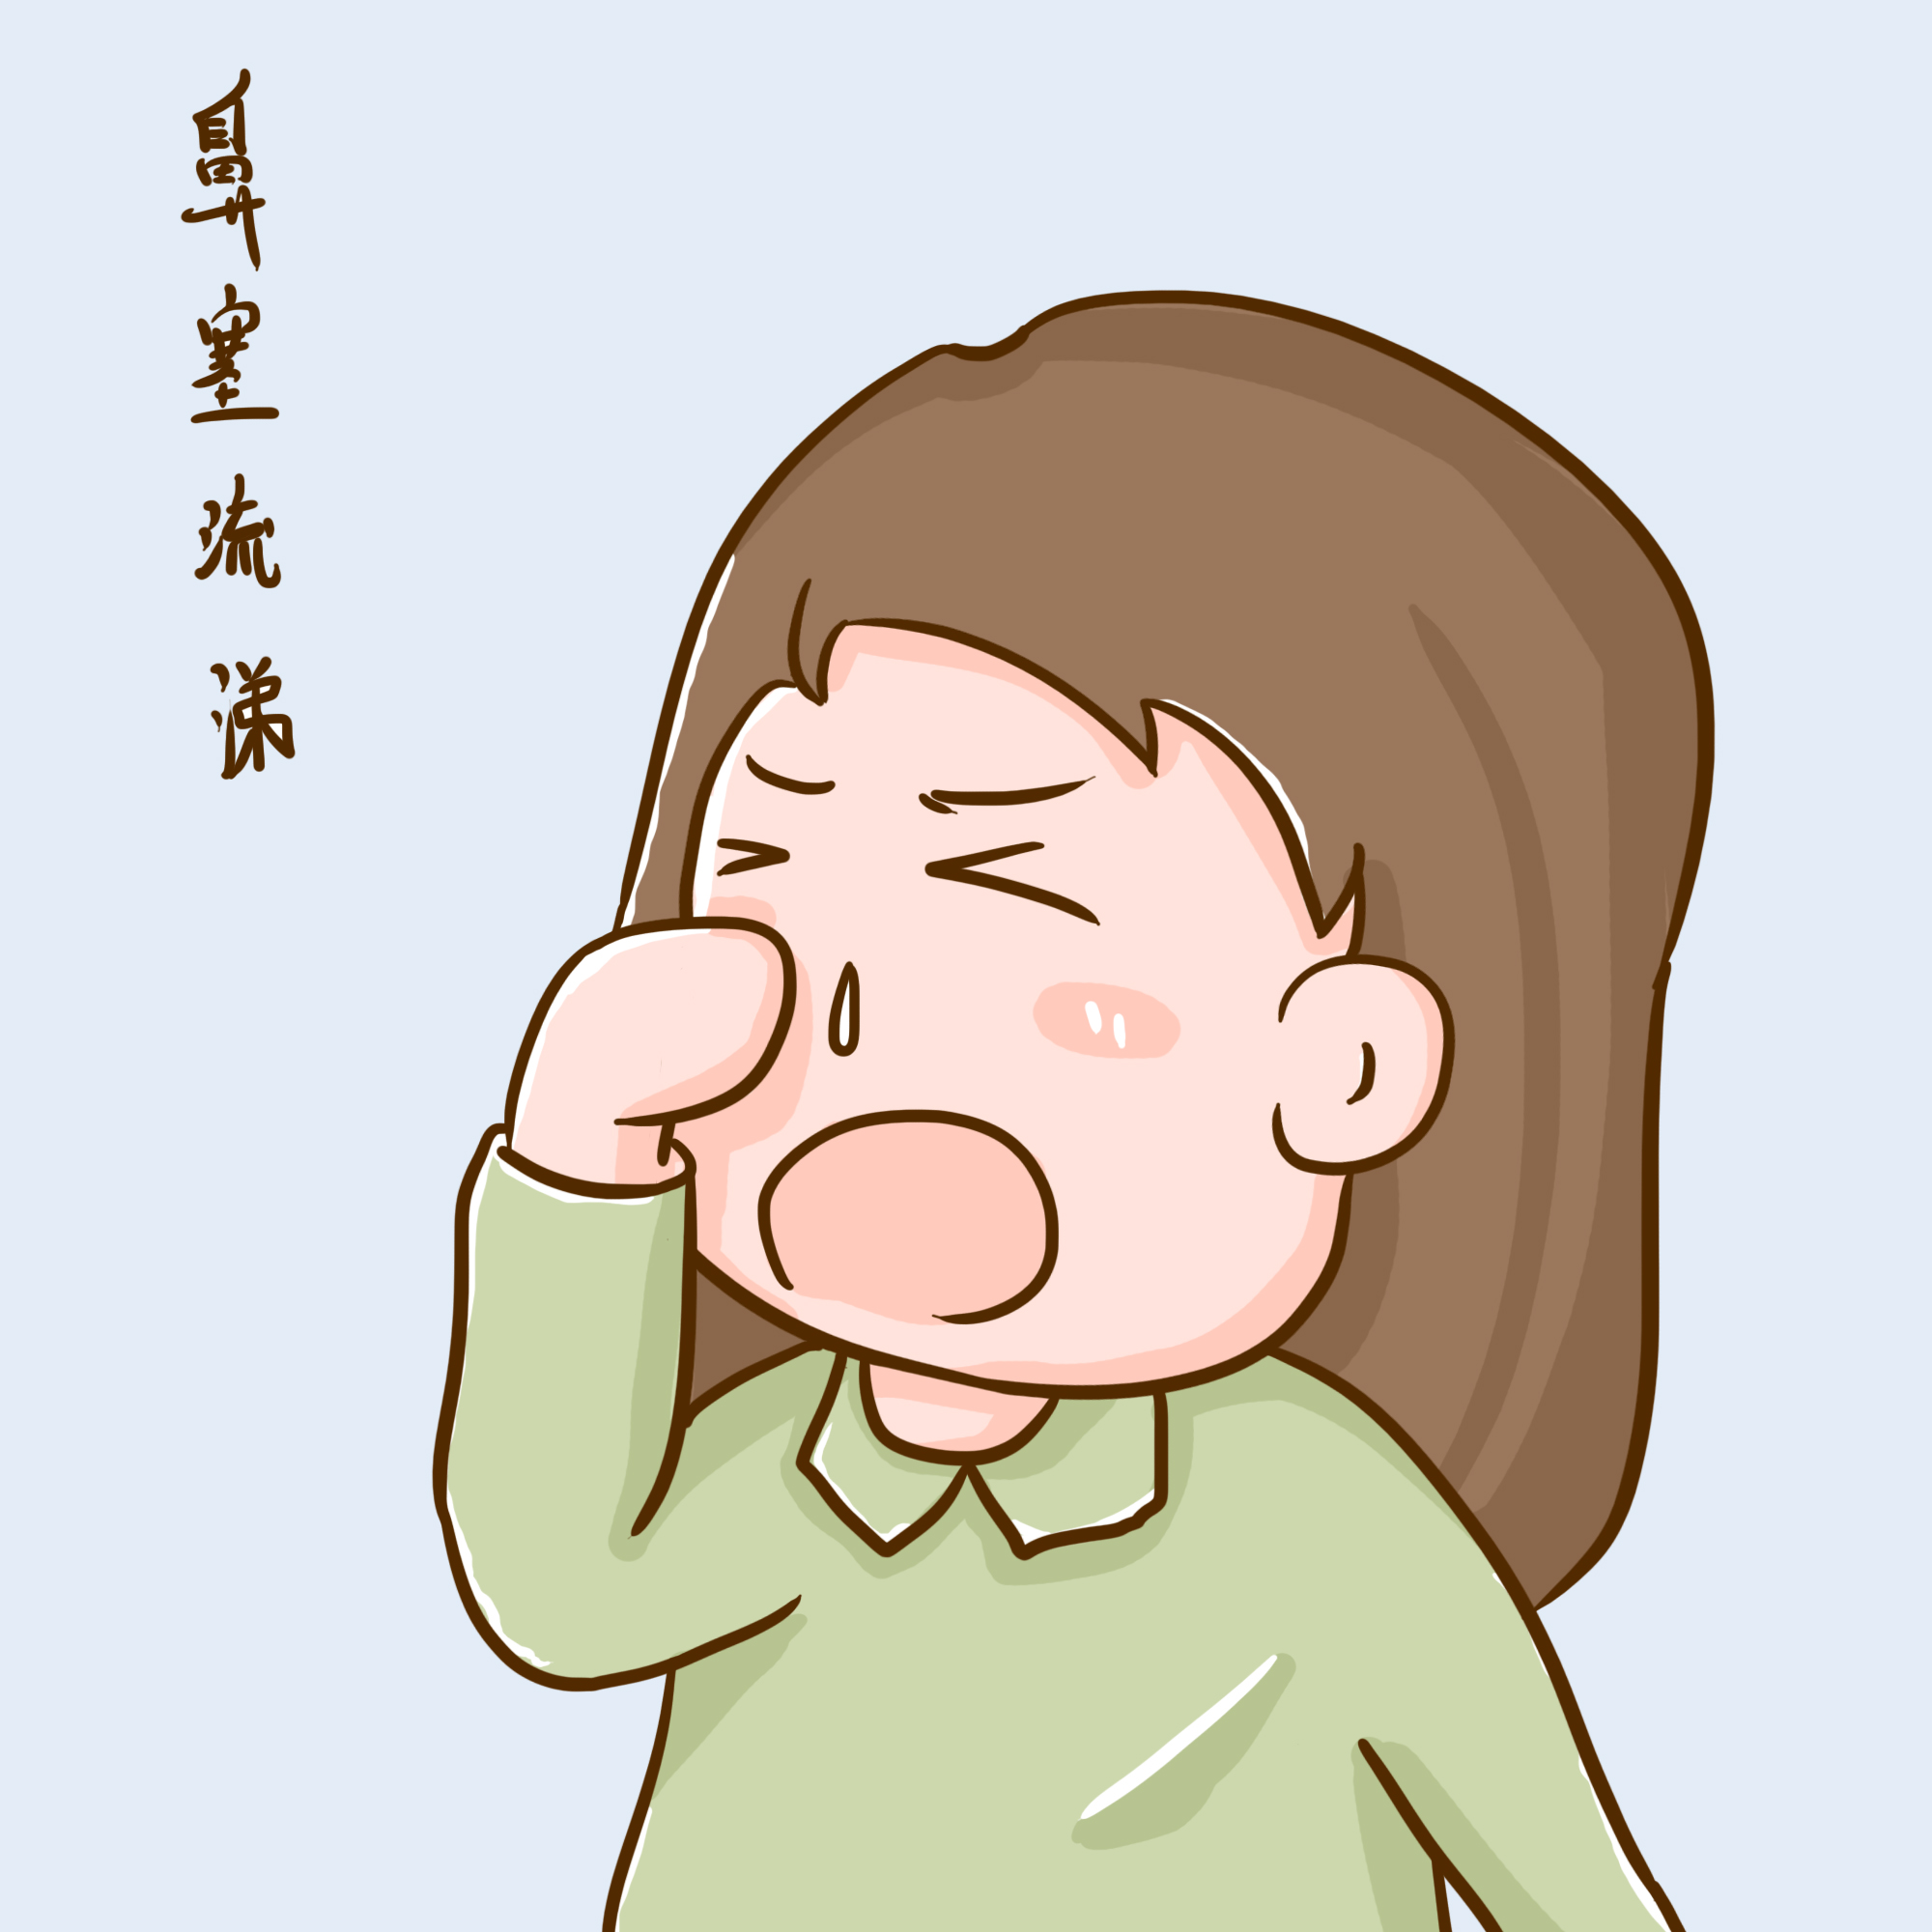 感冒引起的鼻塞和咳嗽吃什么药好？